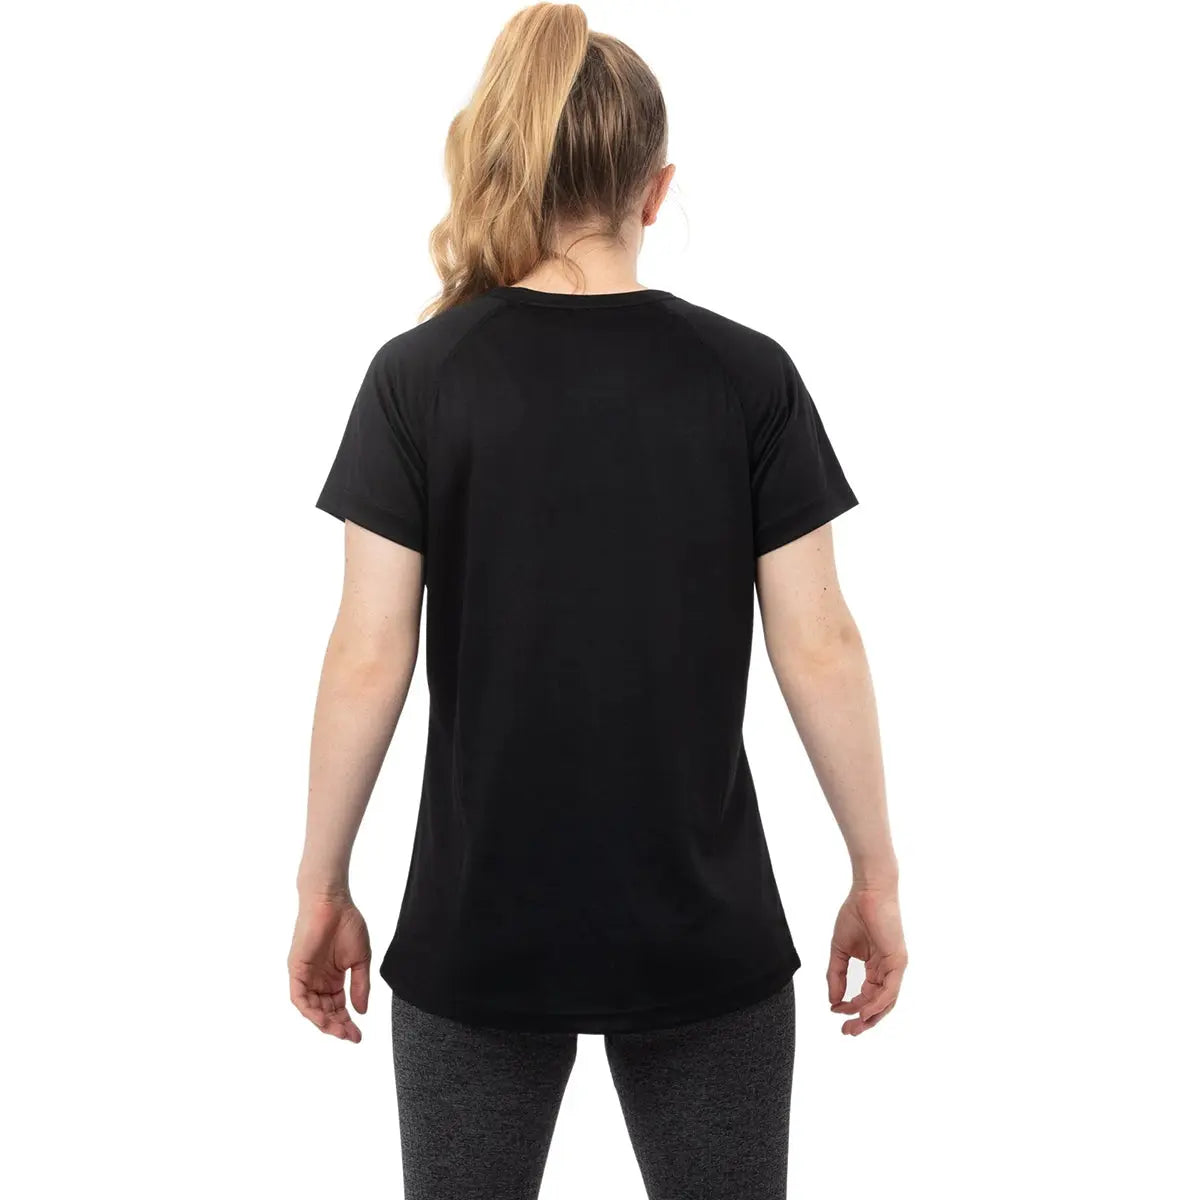 Tatami Fightwear Women's Dry Fit T-Shirt - Small - Black Tatami